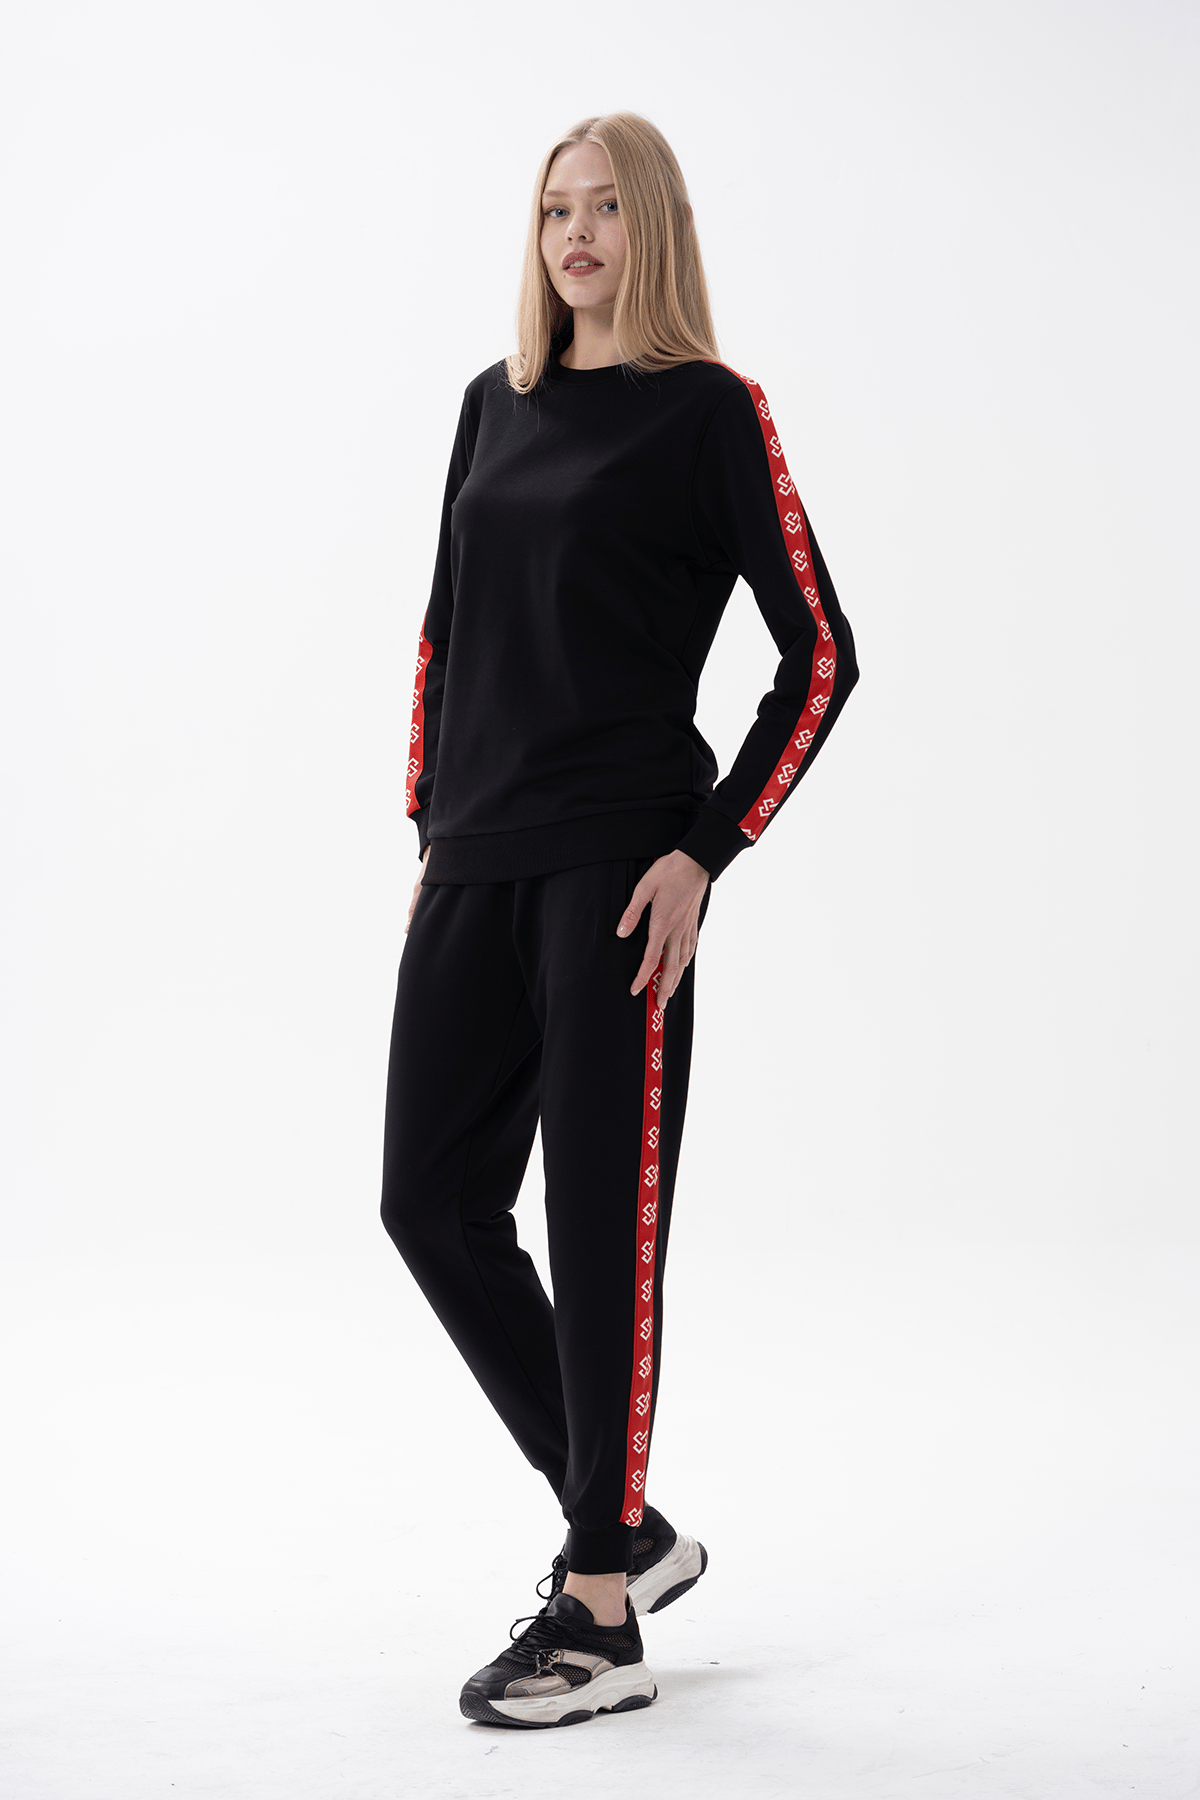 Kadın Kırmızı Şeritli Siyah Eşofman Takımı 10175 | Jiber İç Giyim